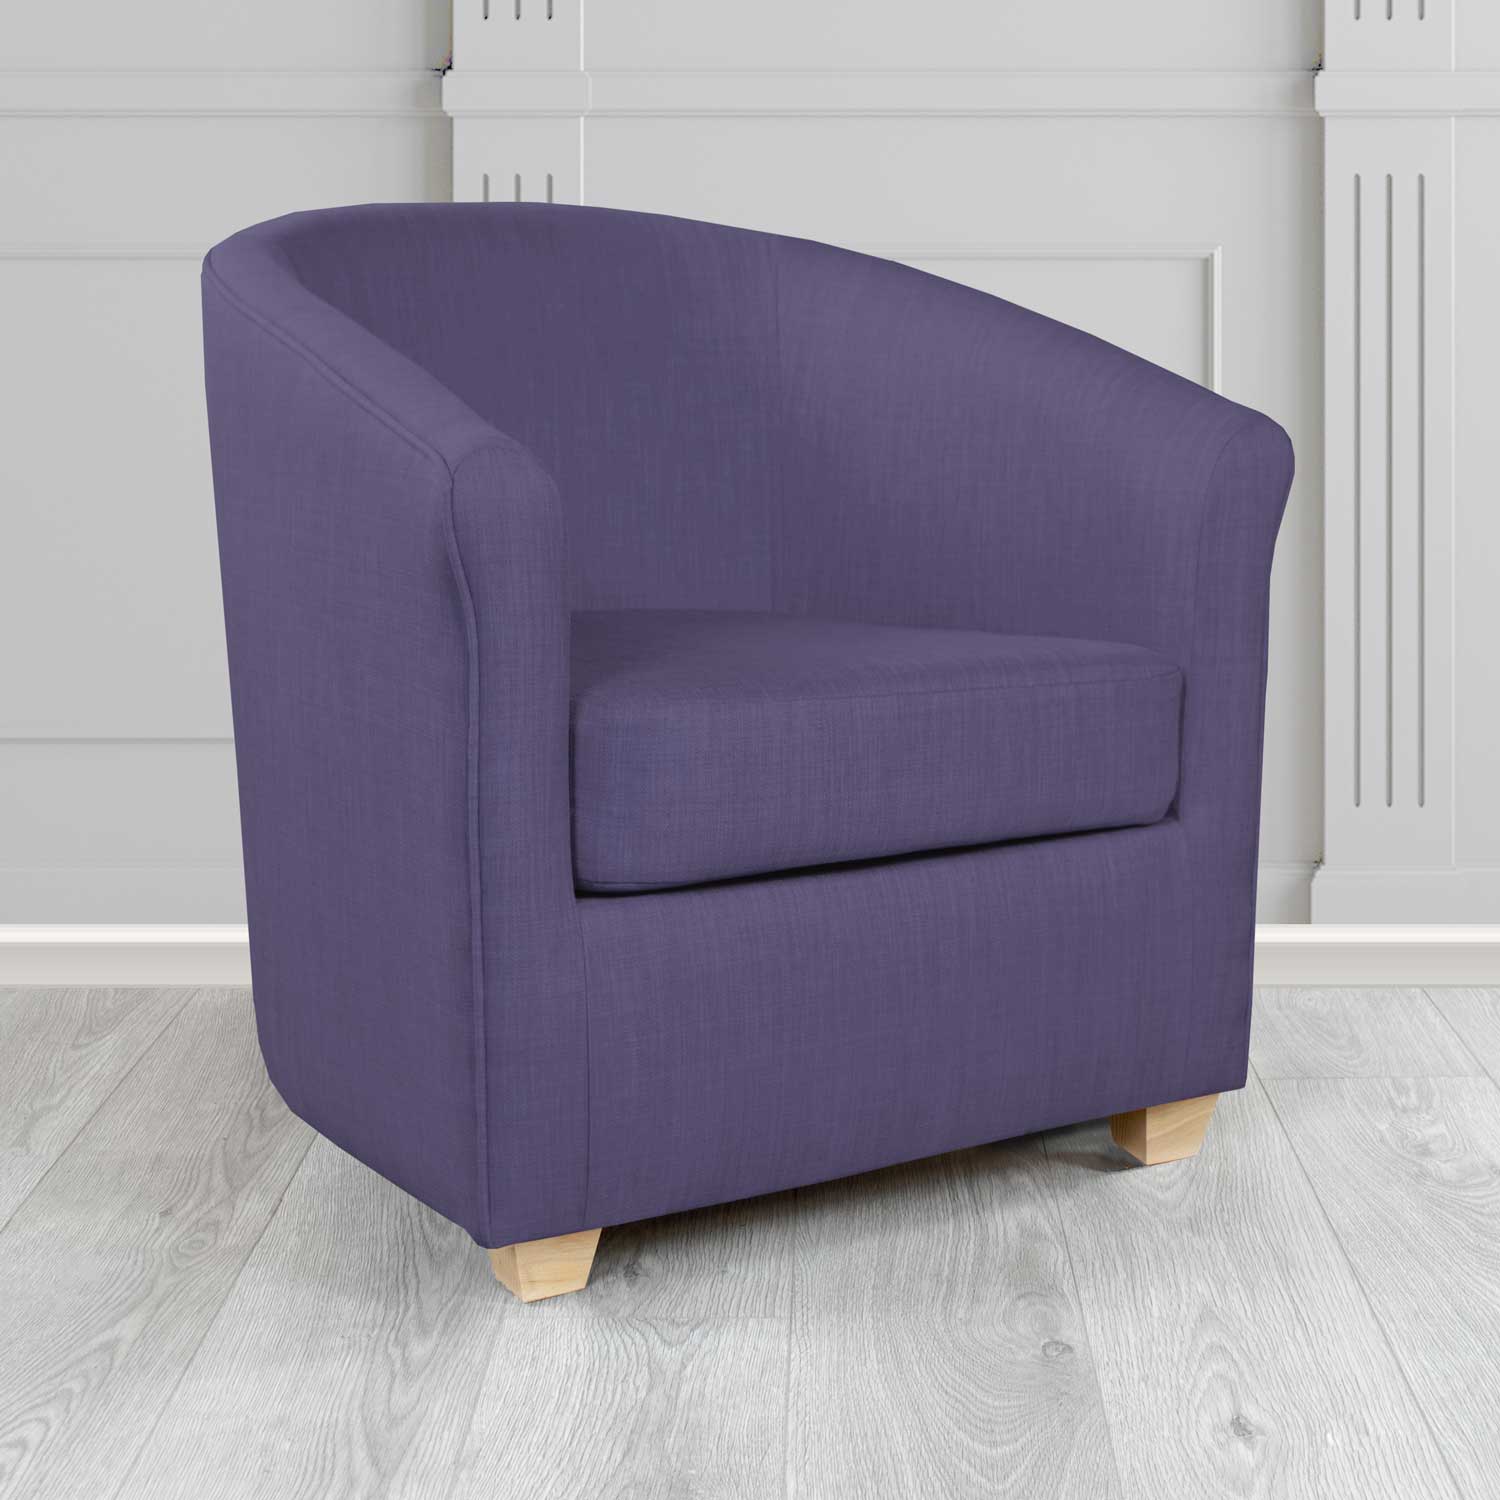 Cannes Charles Purple Plain Linen Fabric Tub Chair - The Tub Chair Shop